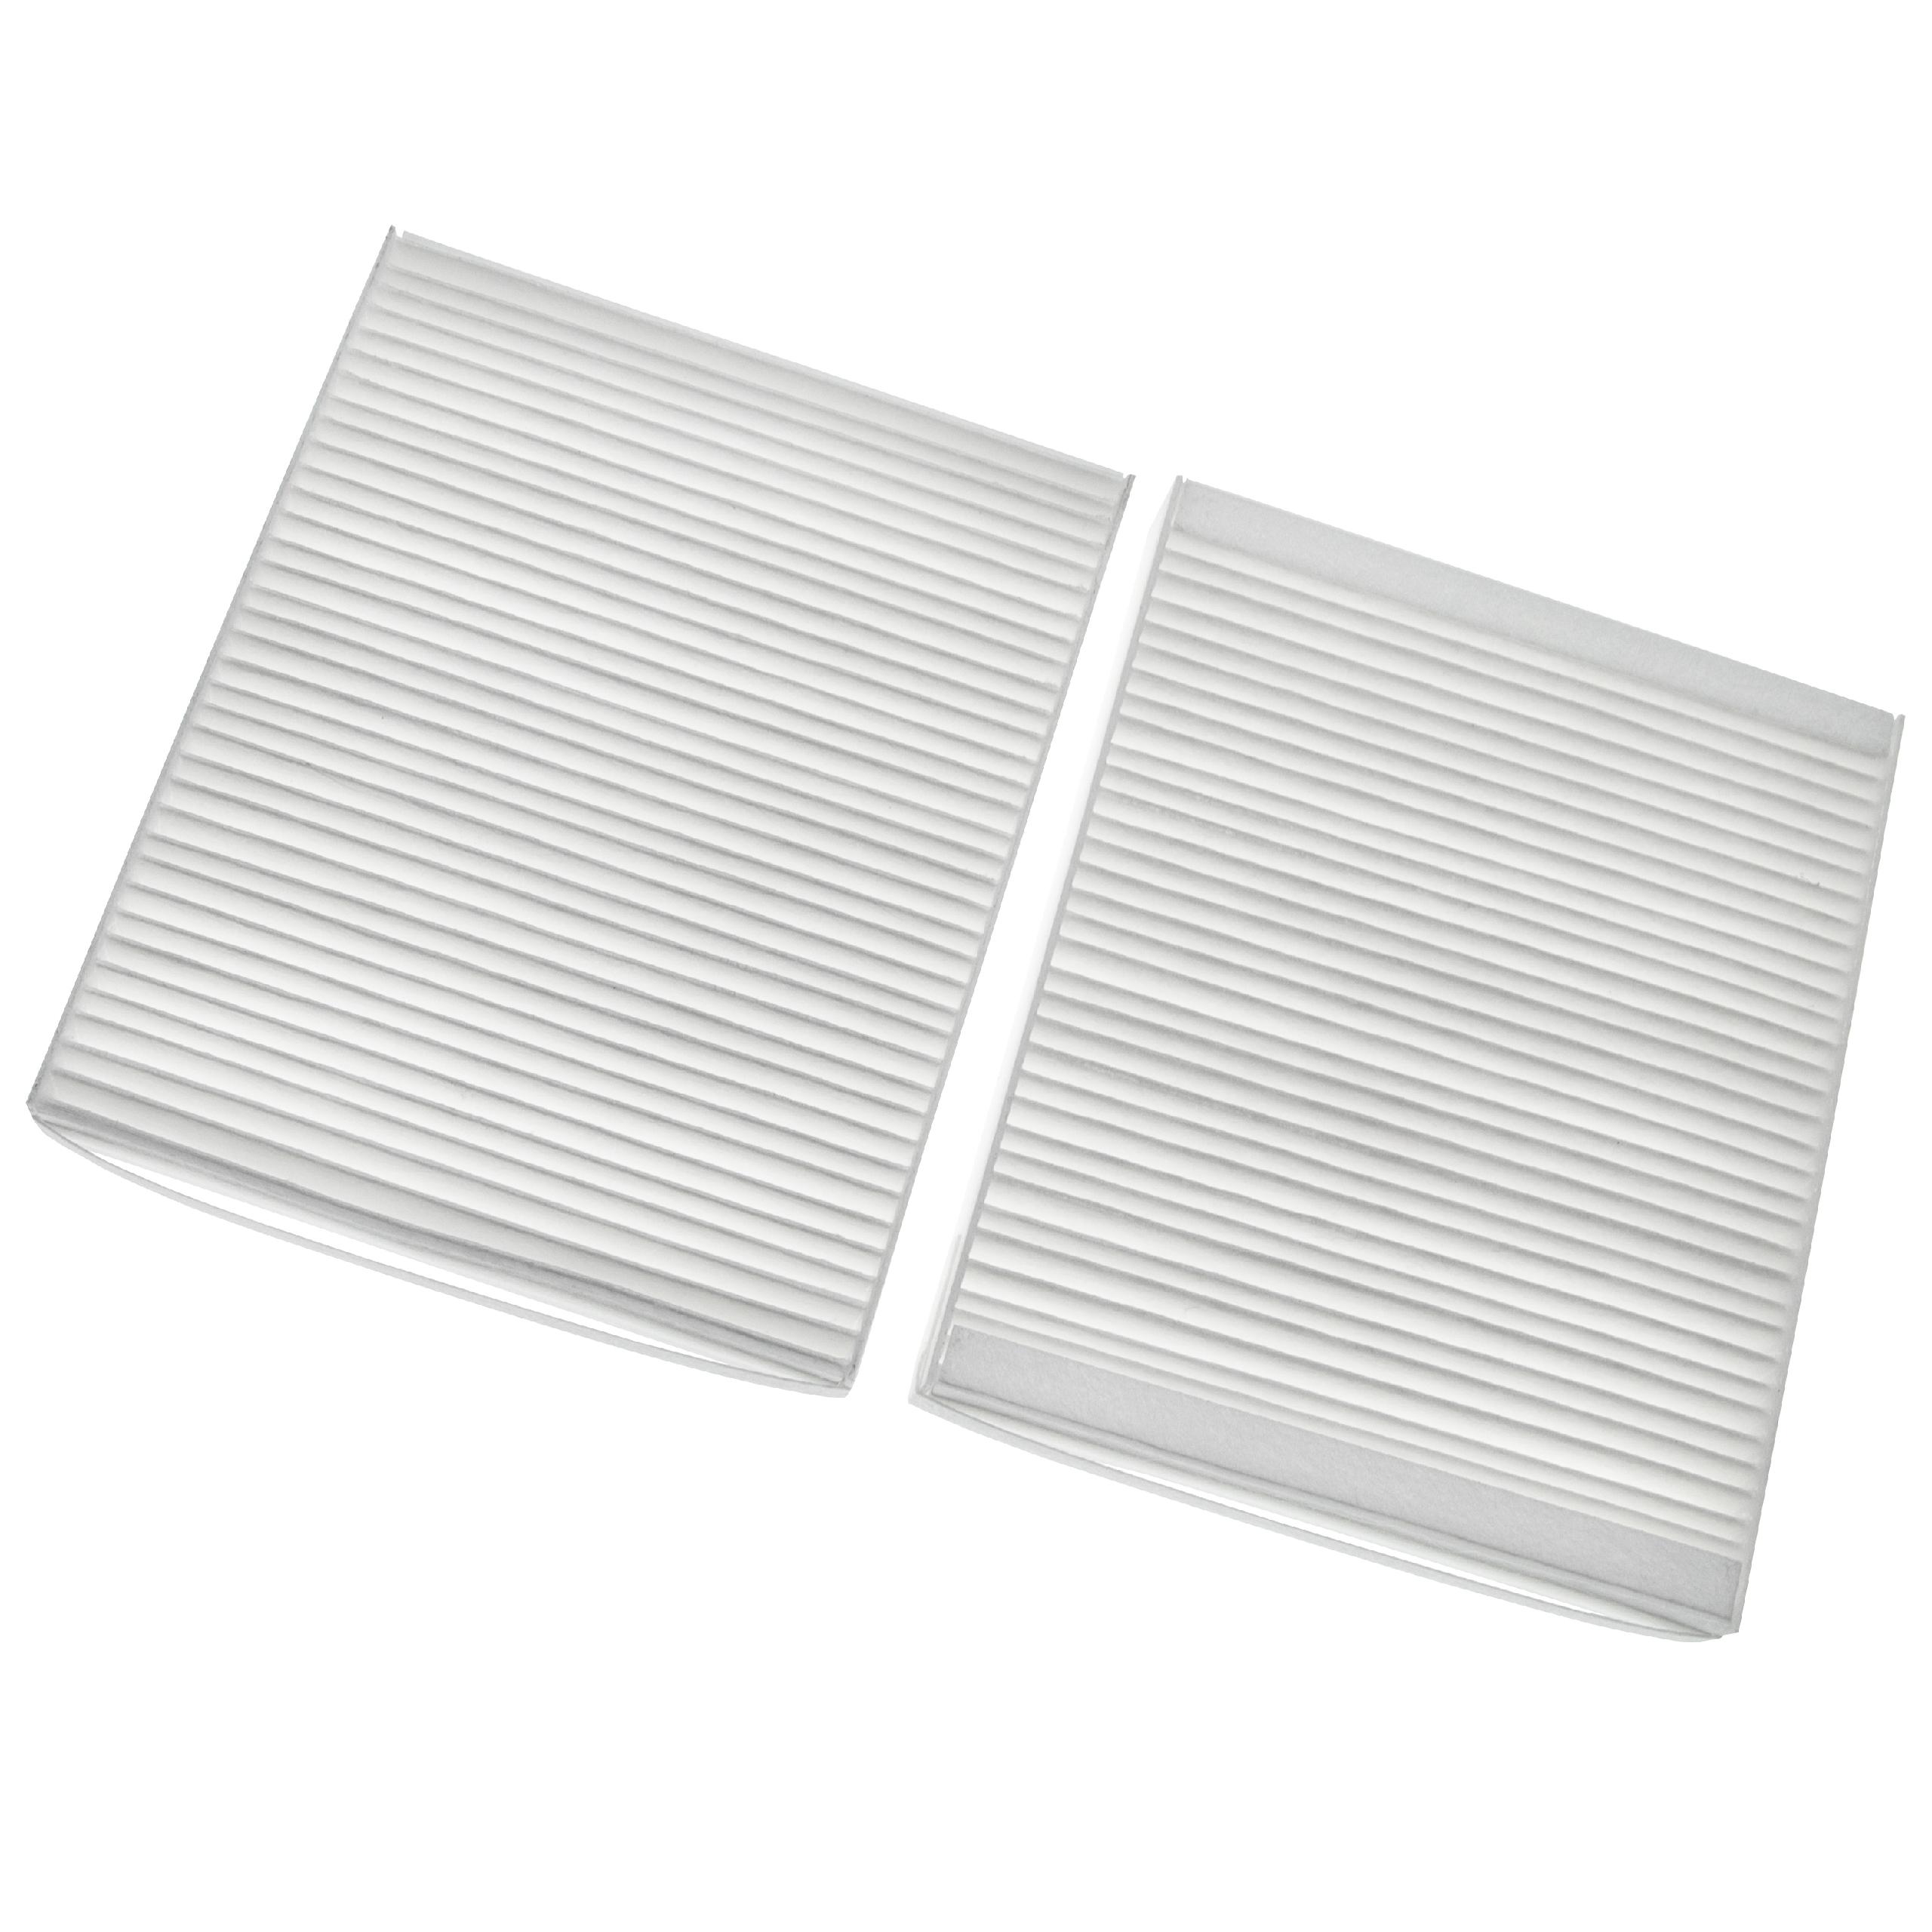 Set filtros 2 uds. reemplaza Lunos 040111, 040 111 para Lunos ventilador - 17,8 x 14,65 x 2,5 cm